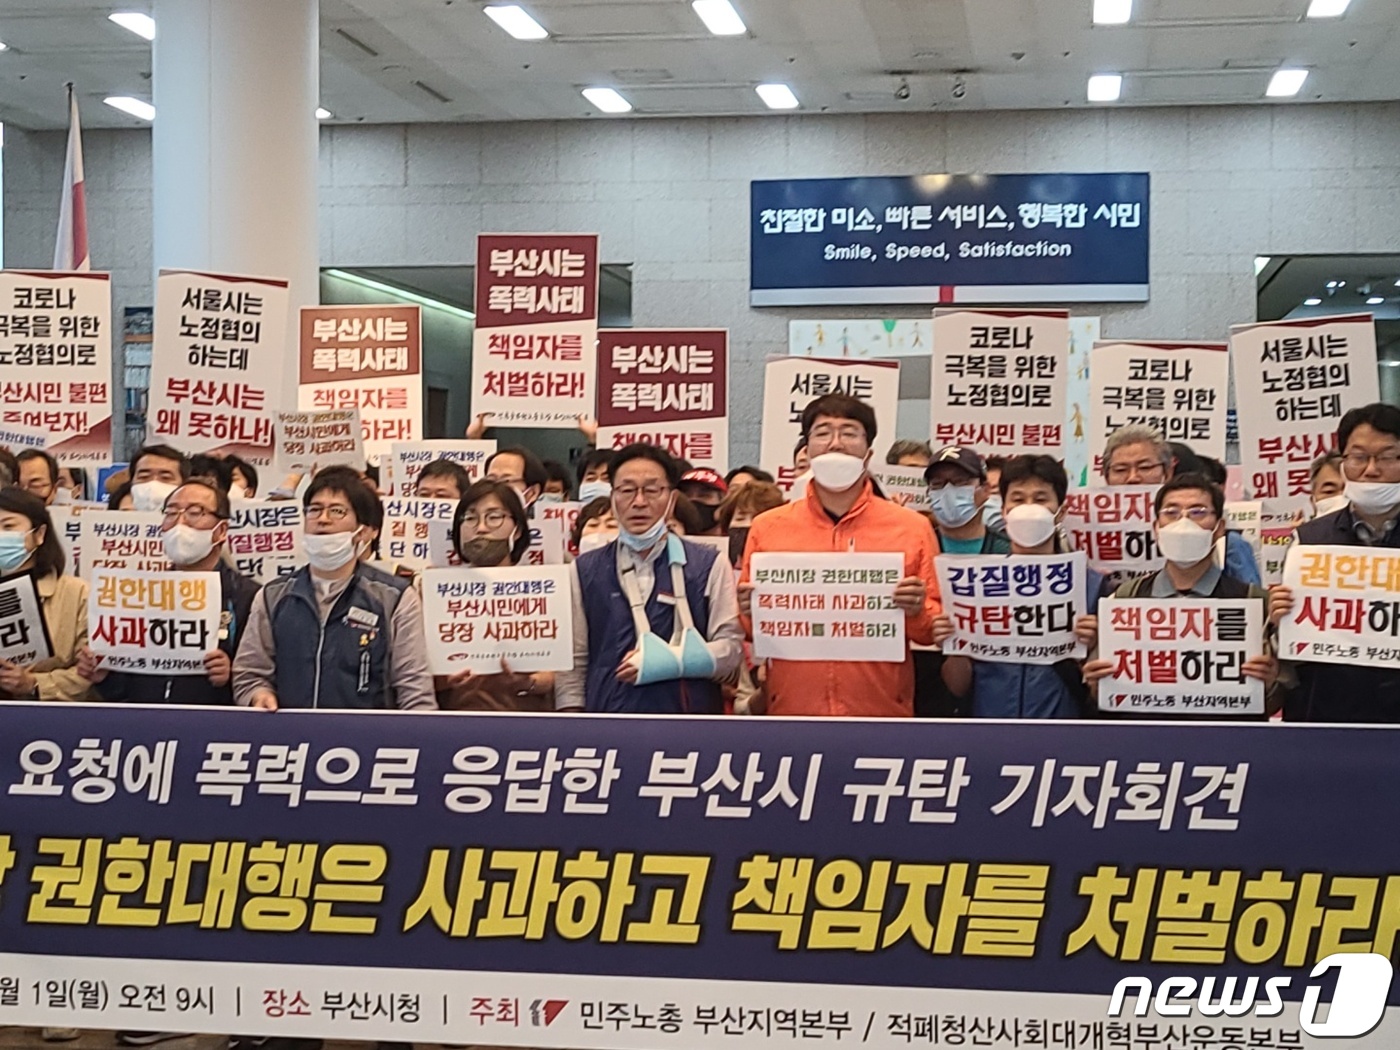 5일째 부산시청 농성..부산시-공무원노조 갈등 심화 - 뉴스1